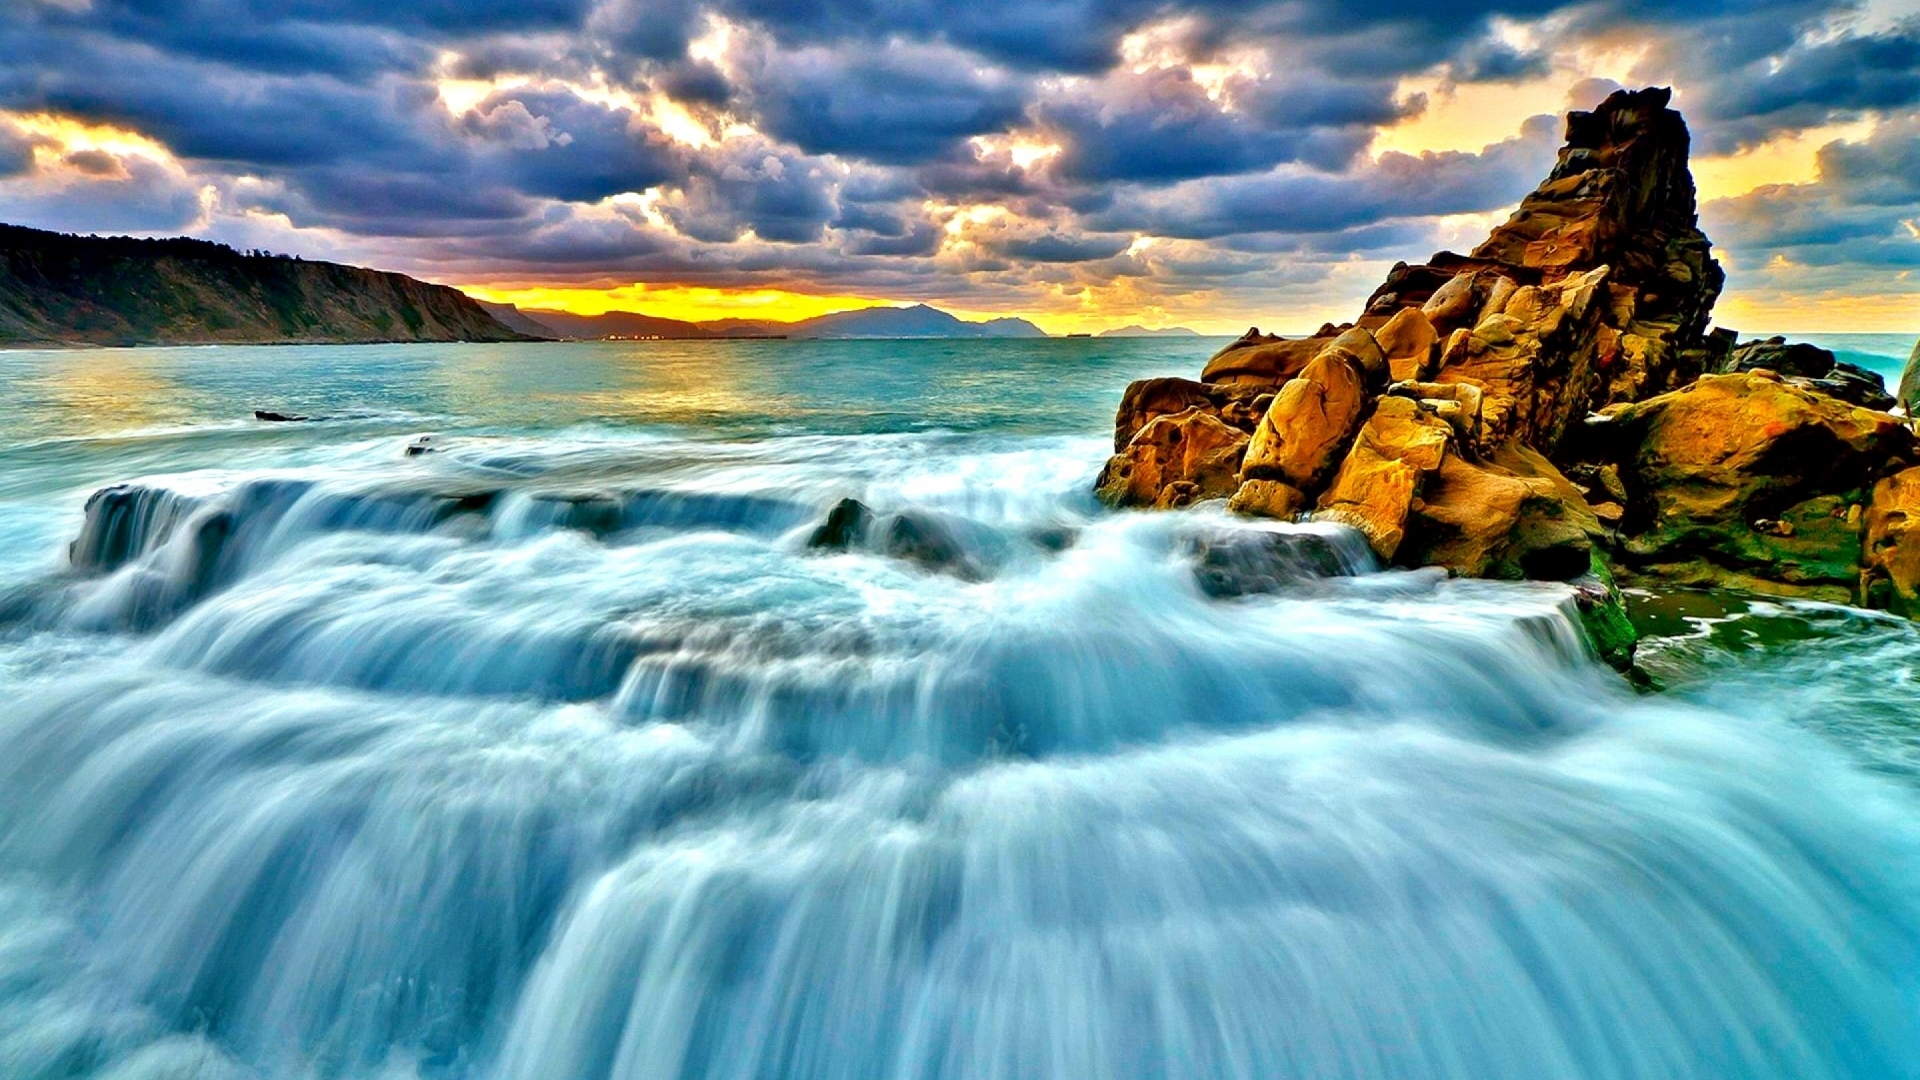 HD Waterfall Wallpapers 1080p - WallpaperSafari